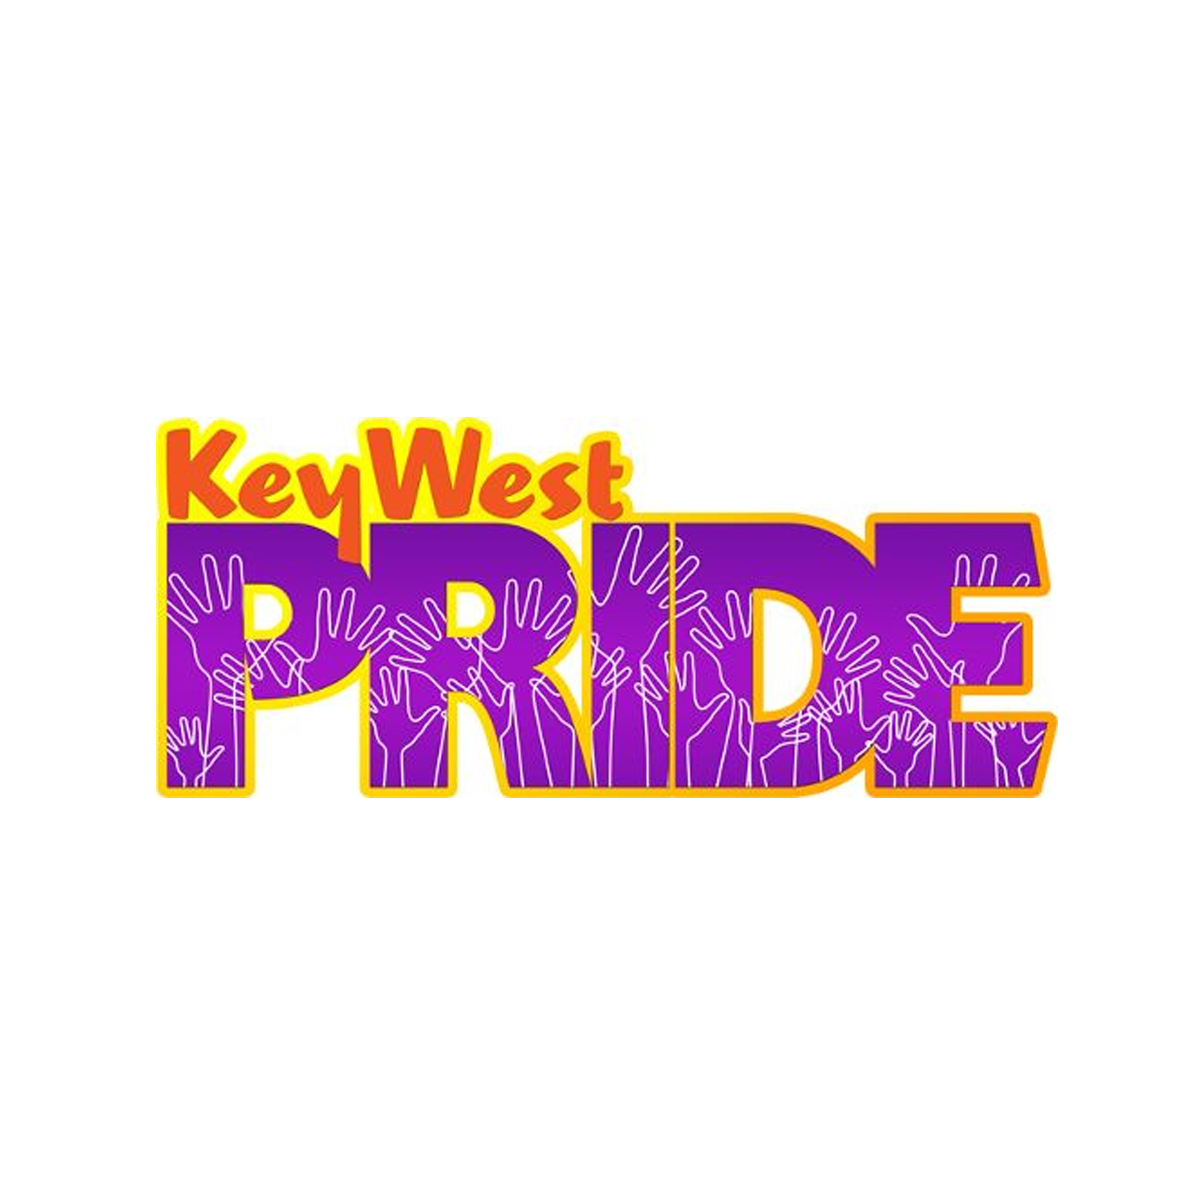 Key West Pride